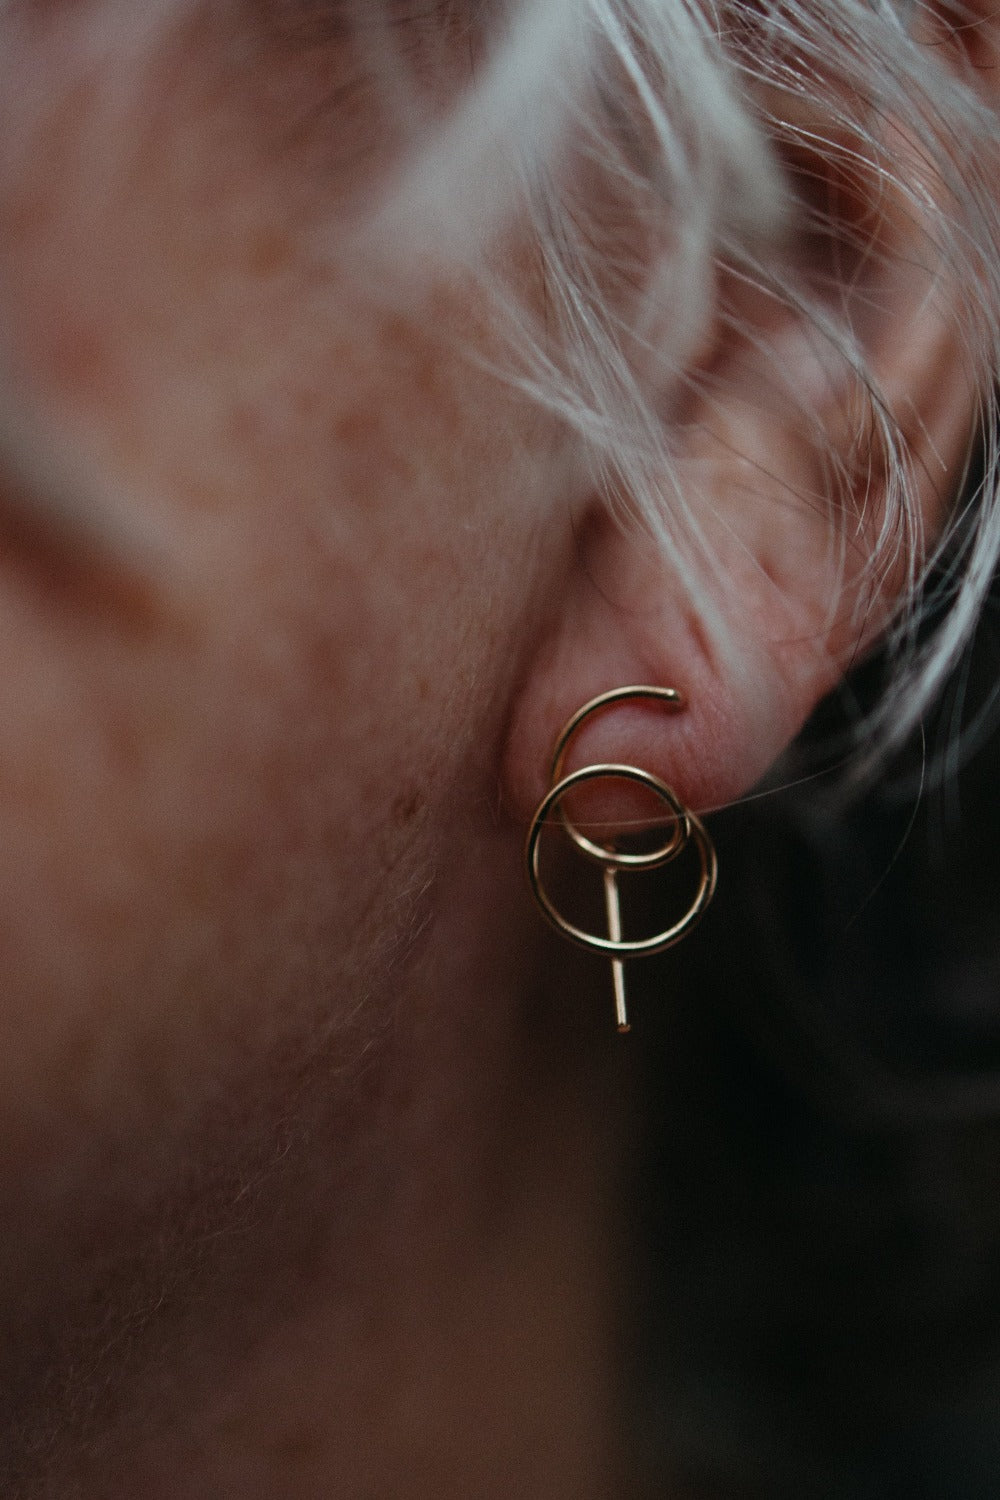 model wearing gold spiral earrings